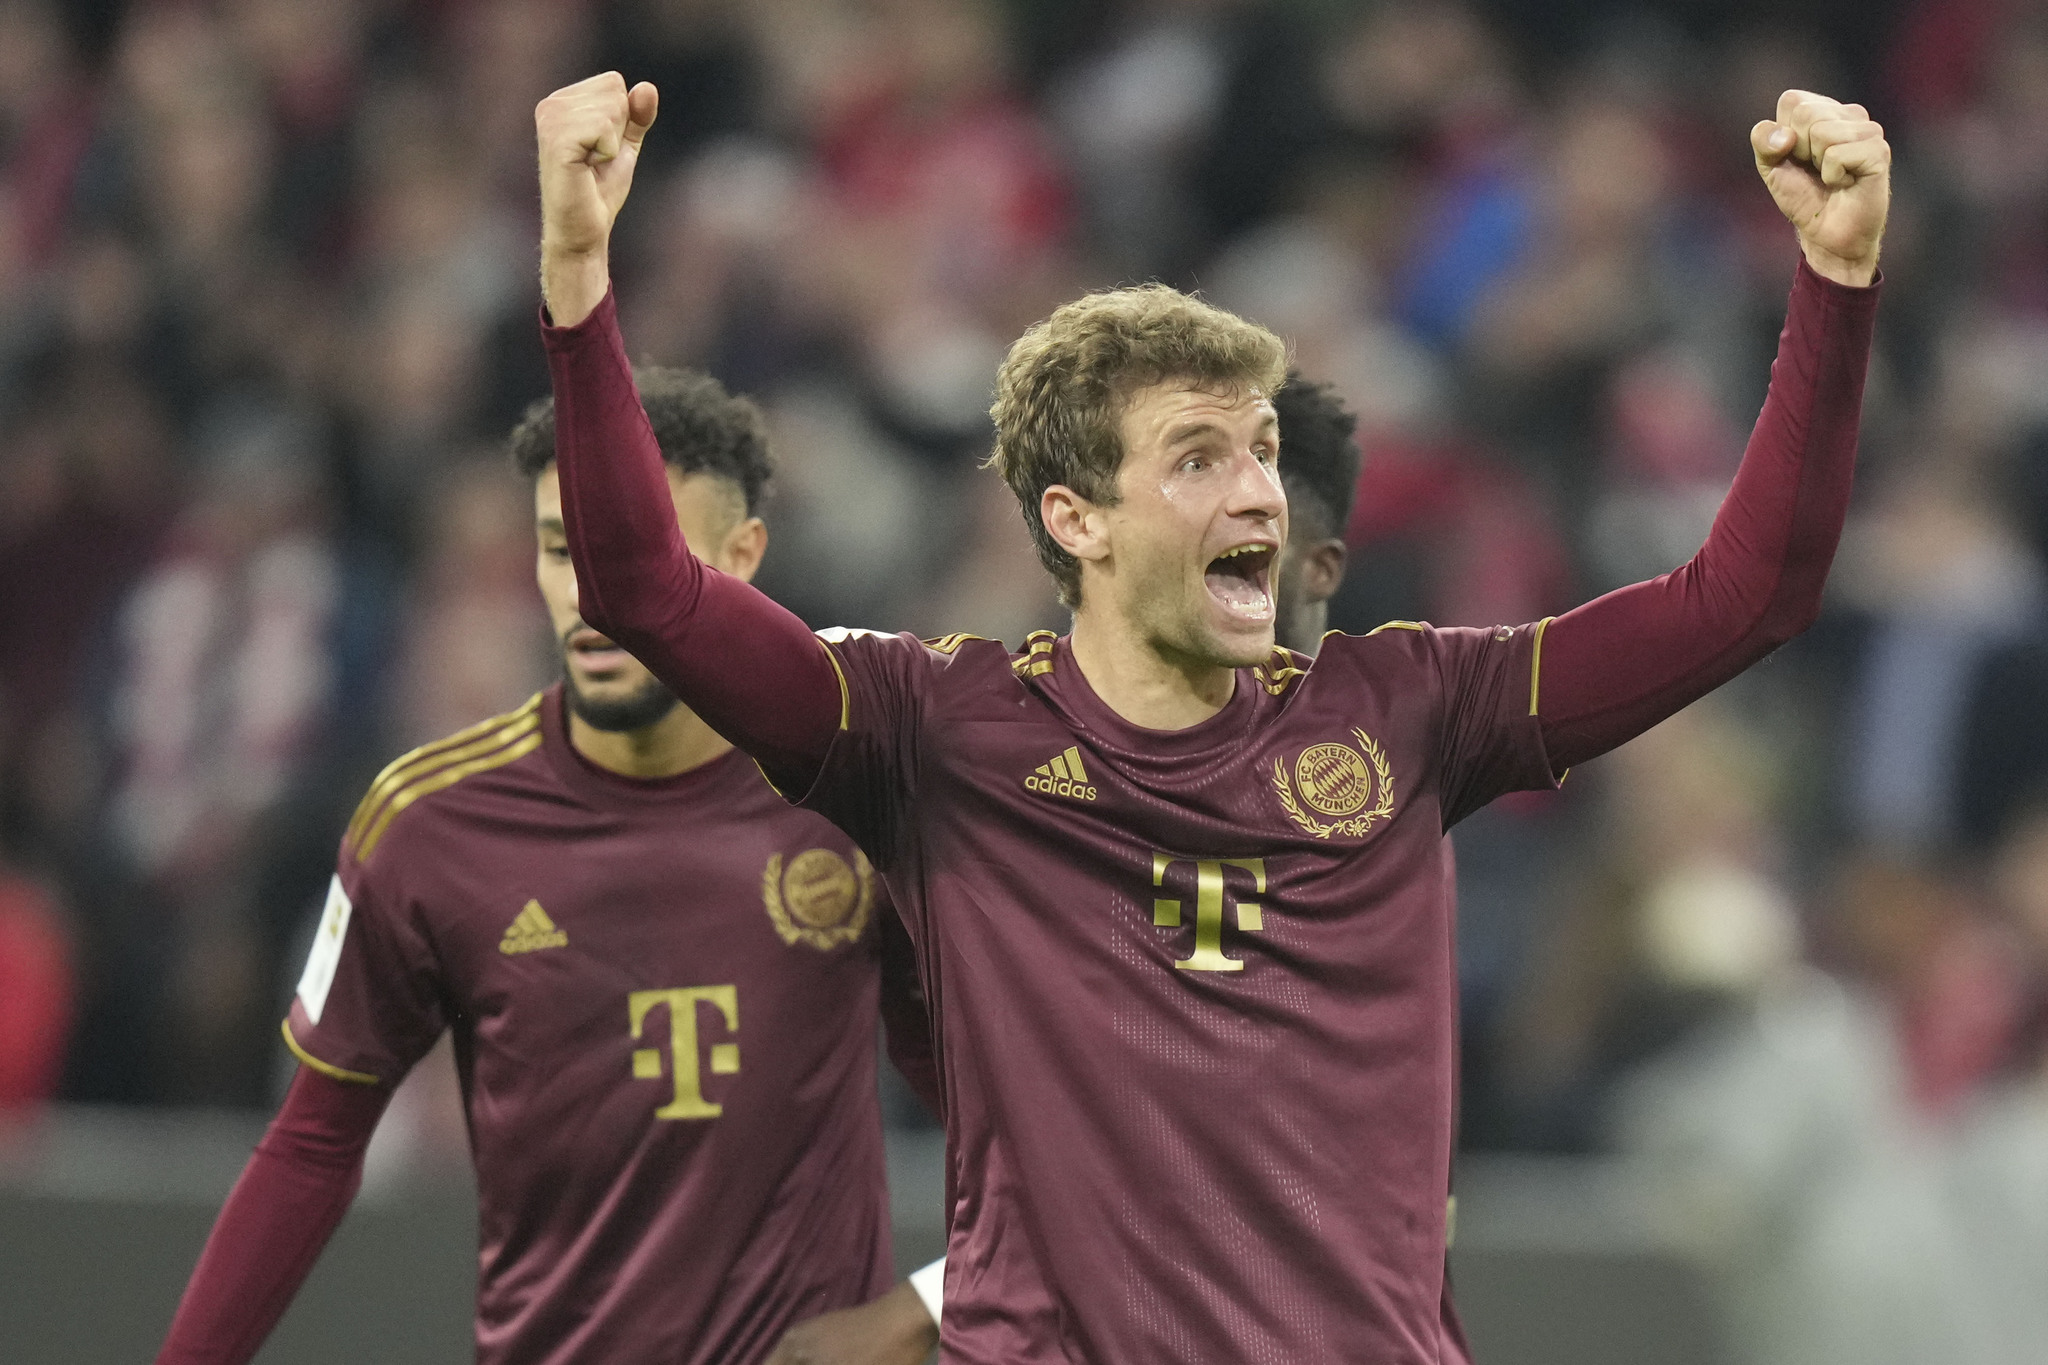 Bayern Munich's Thomas Muller celebrates after scoring